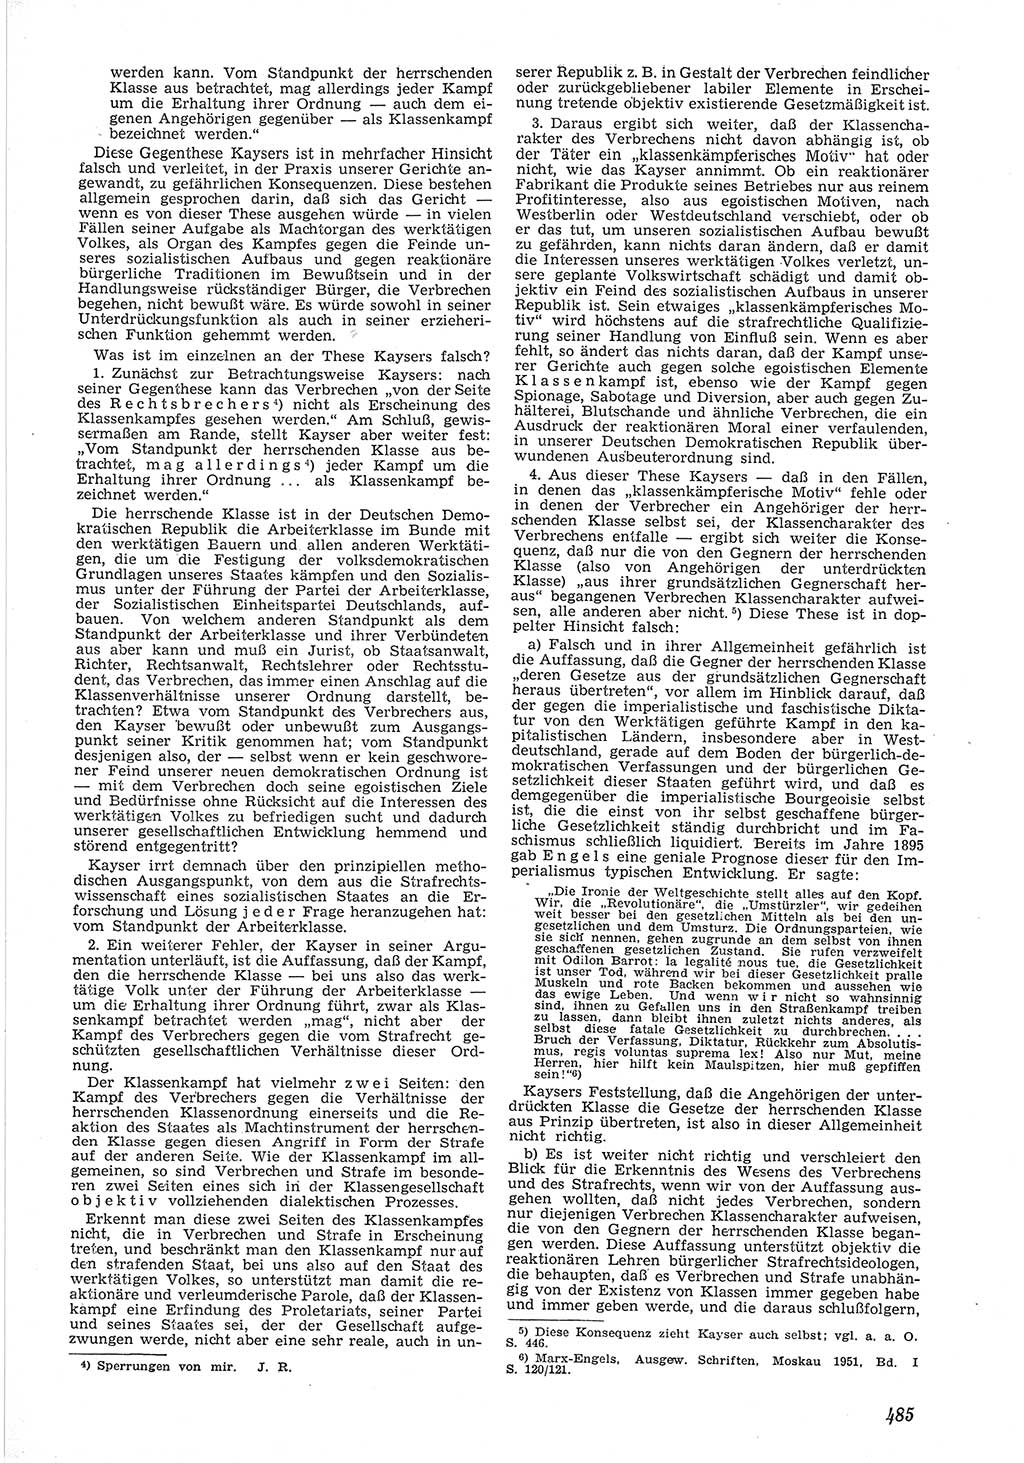 Neue Justiz (NJ), Zeitschrift für Recht und Rechtswissenschaft [Deutsche Demokratische Republik (DDR)], 6. Jahrgang 1952, Seite 485 (NJ DDR 1952, S. 485)